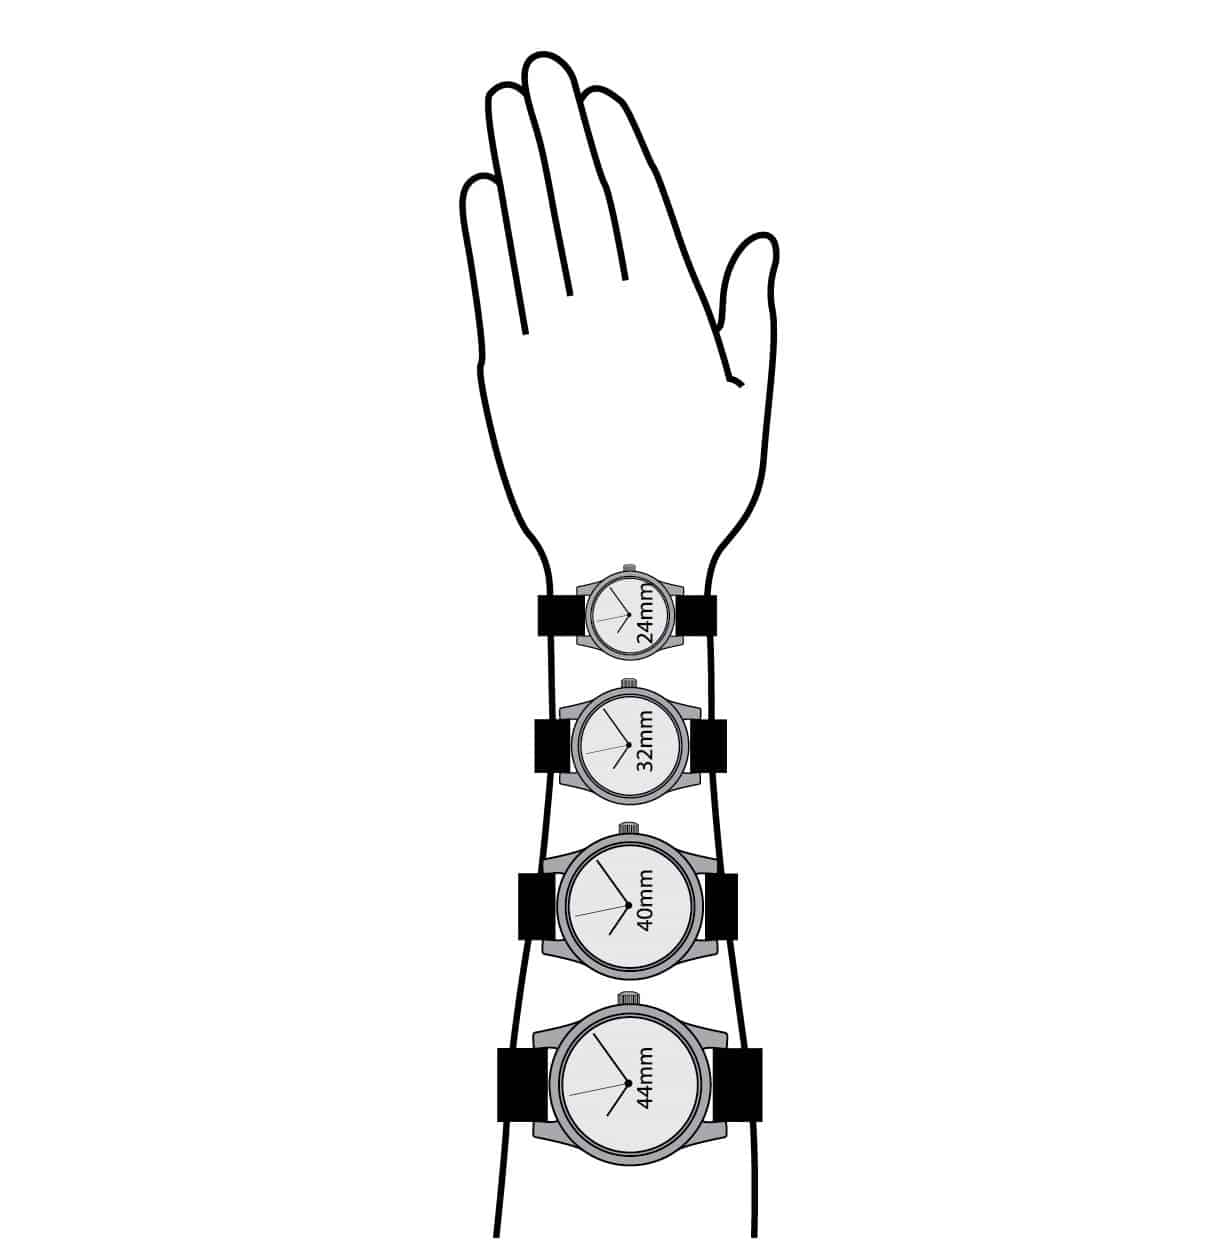 Các loại size mặt đồng hồ đeo tay phổ biến hiện nay.